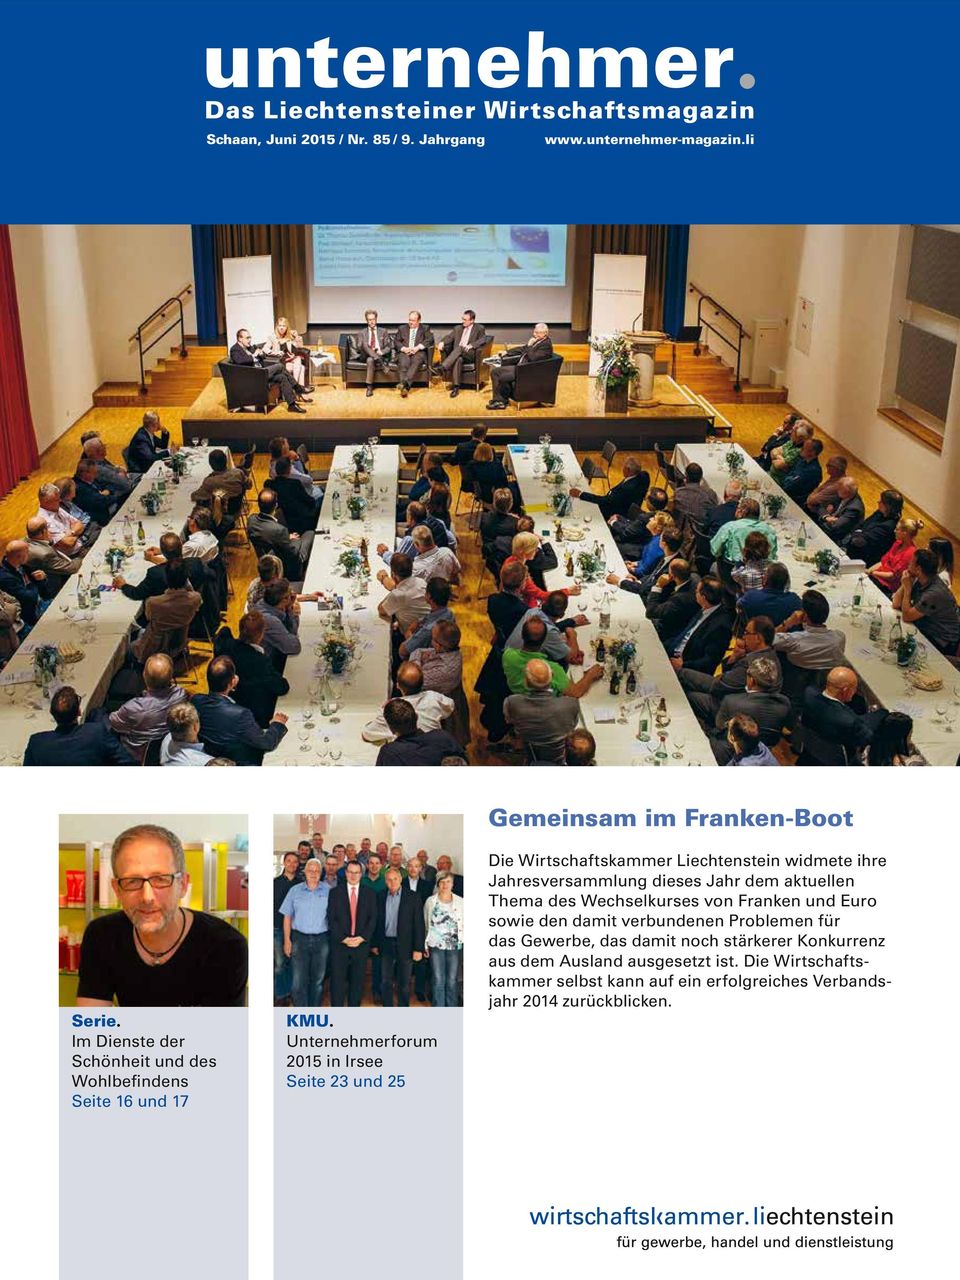 Unternehmerforum 2015 in Irsee Seite 23 und 25 Gemeinsam im Franken-Boot Die Wirtschaftskammer Liechtenstein widmete ihre Jahresversammlung dieses